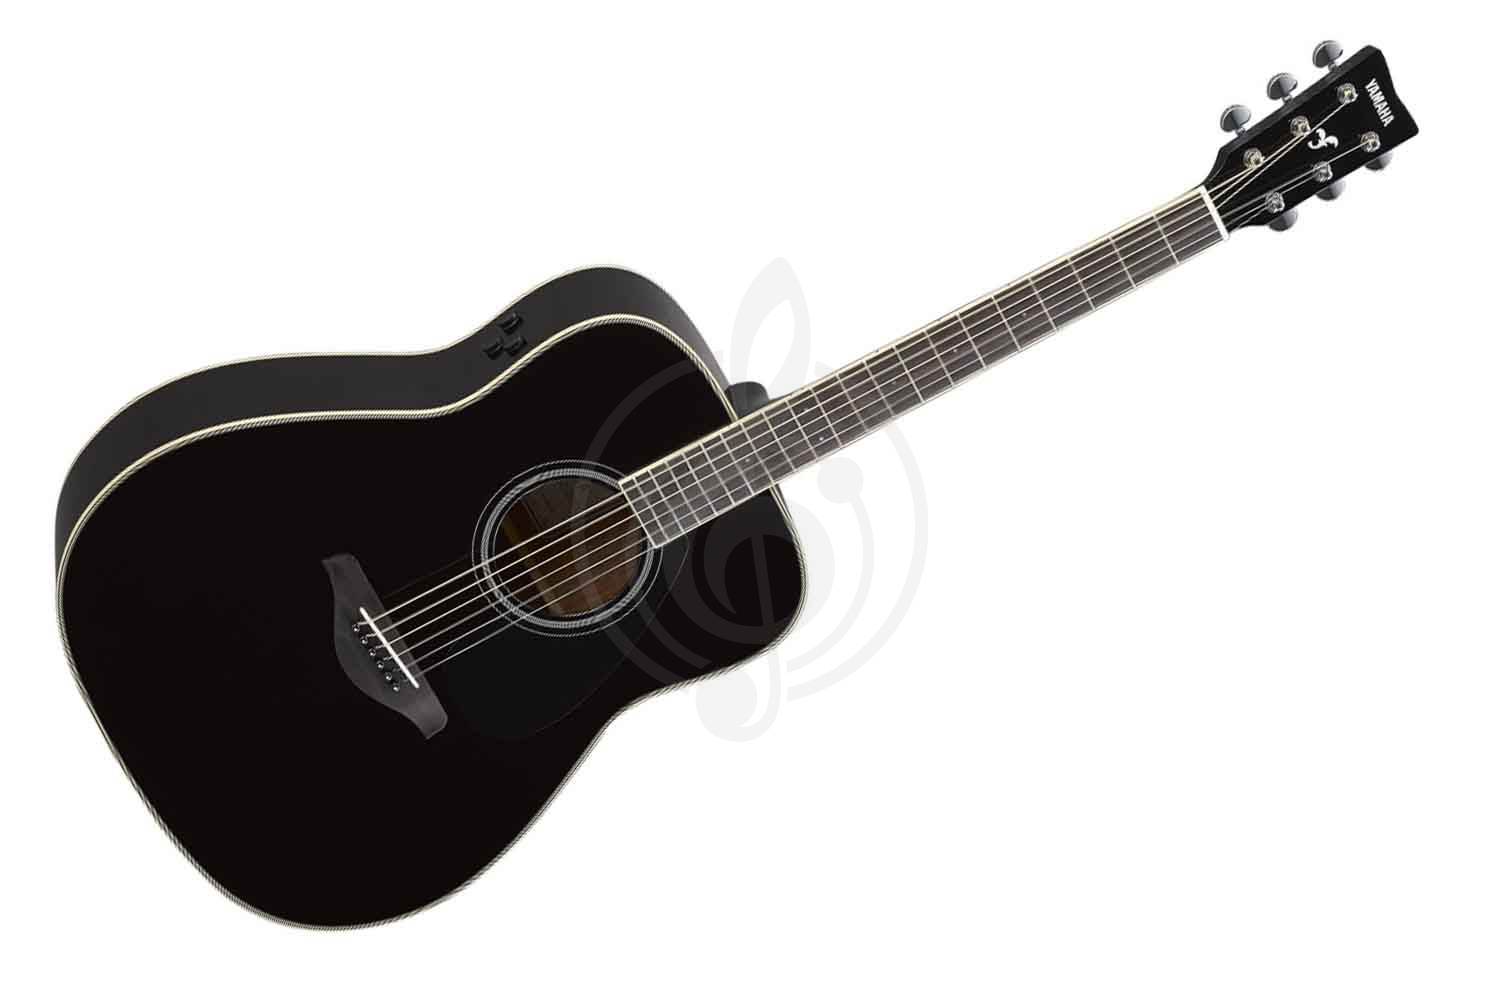 Трансакустическая гитара Трансакустические гитары Yamaha YAMAHA FG-TA BLACK - трансакустическая гитара FG-TA BLACK - фото 1